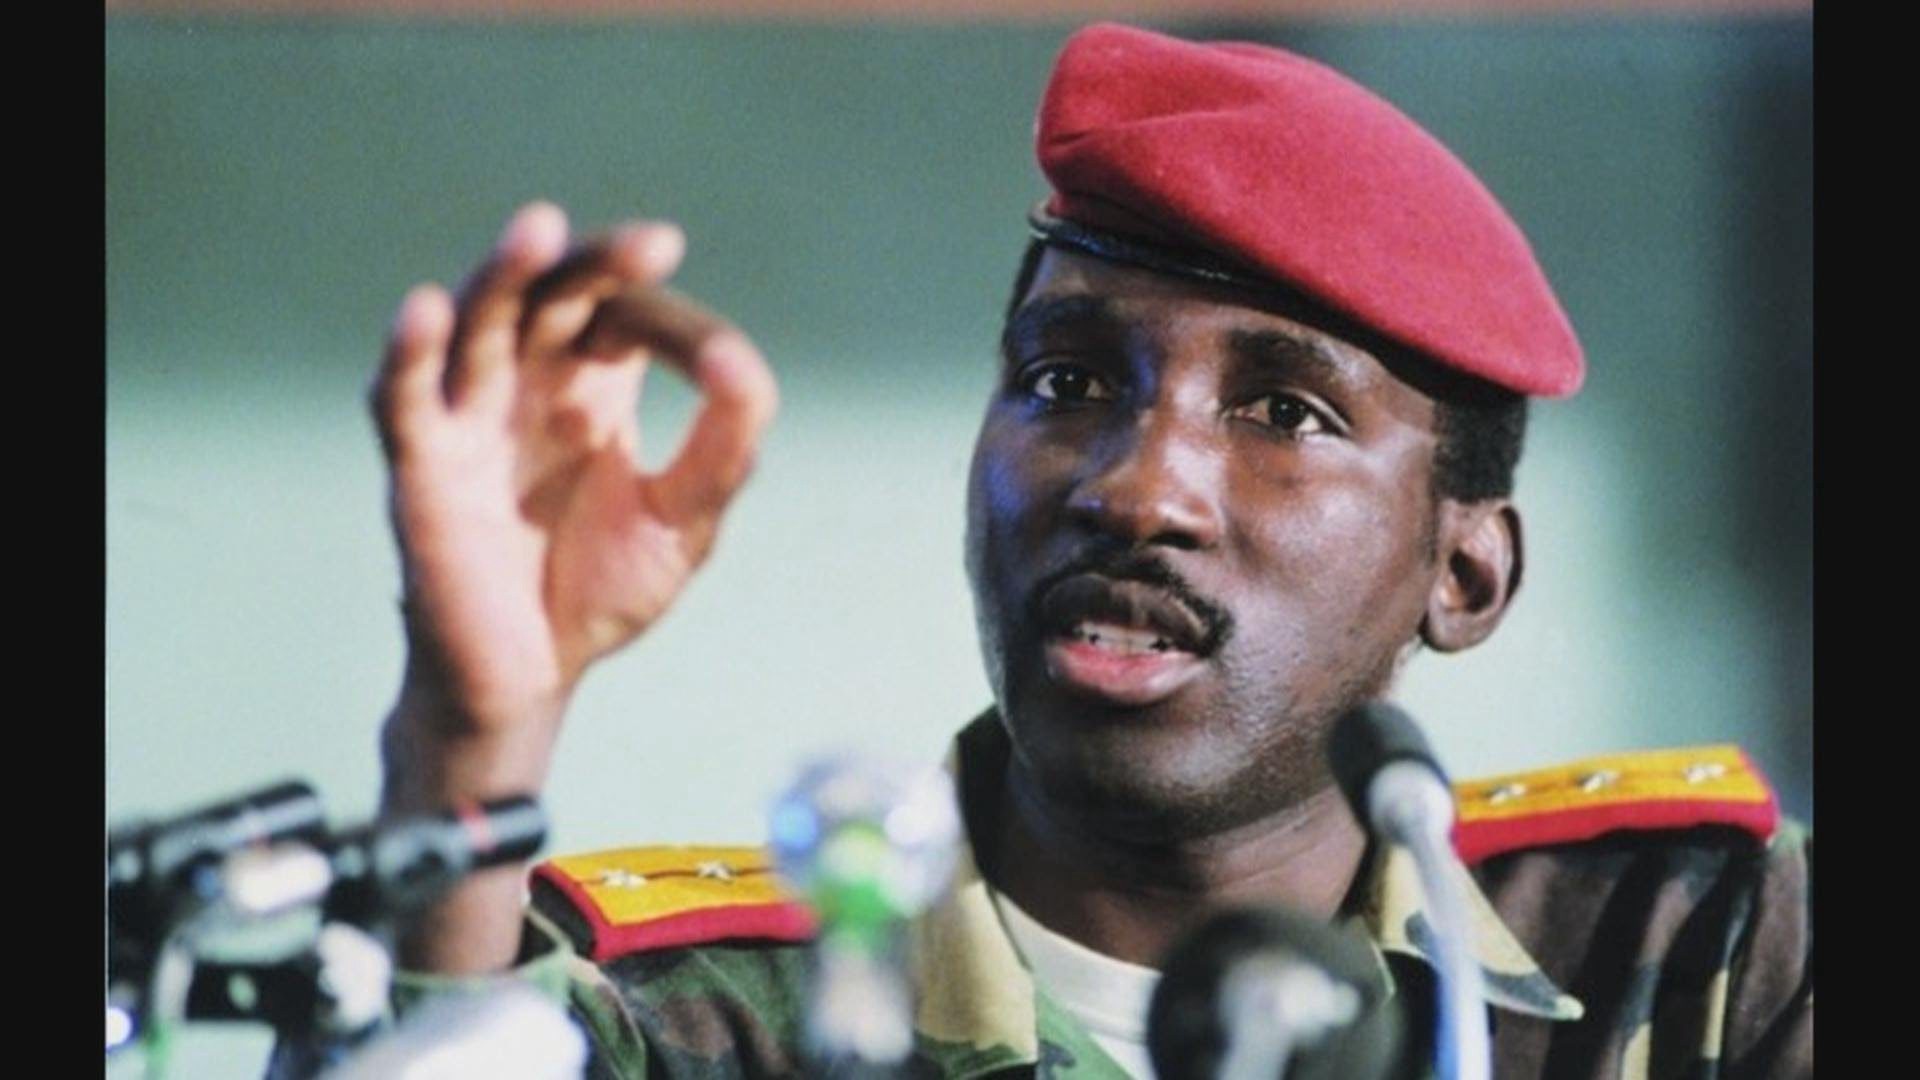 Ricordando La Figura E L’Insegnamento Di Un Grande Rivoluzionario Africano: Thomas Sankara